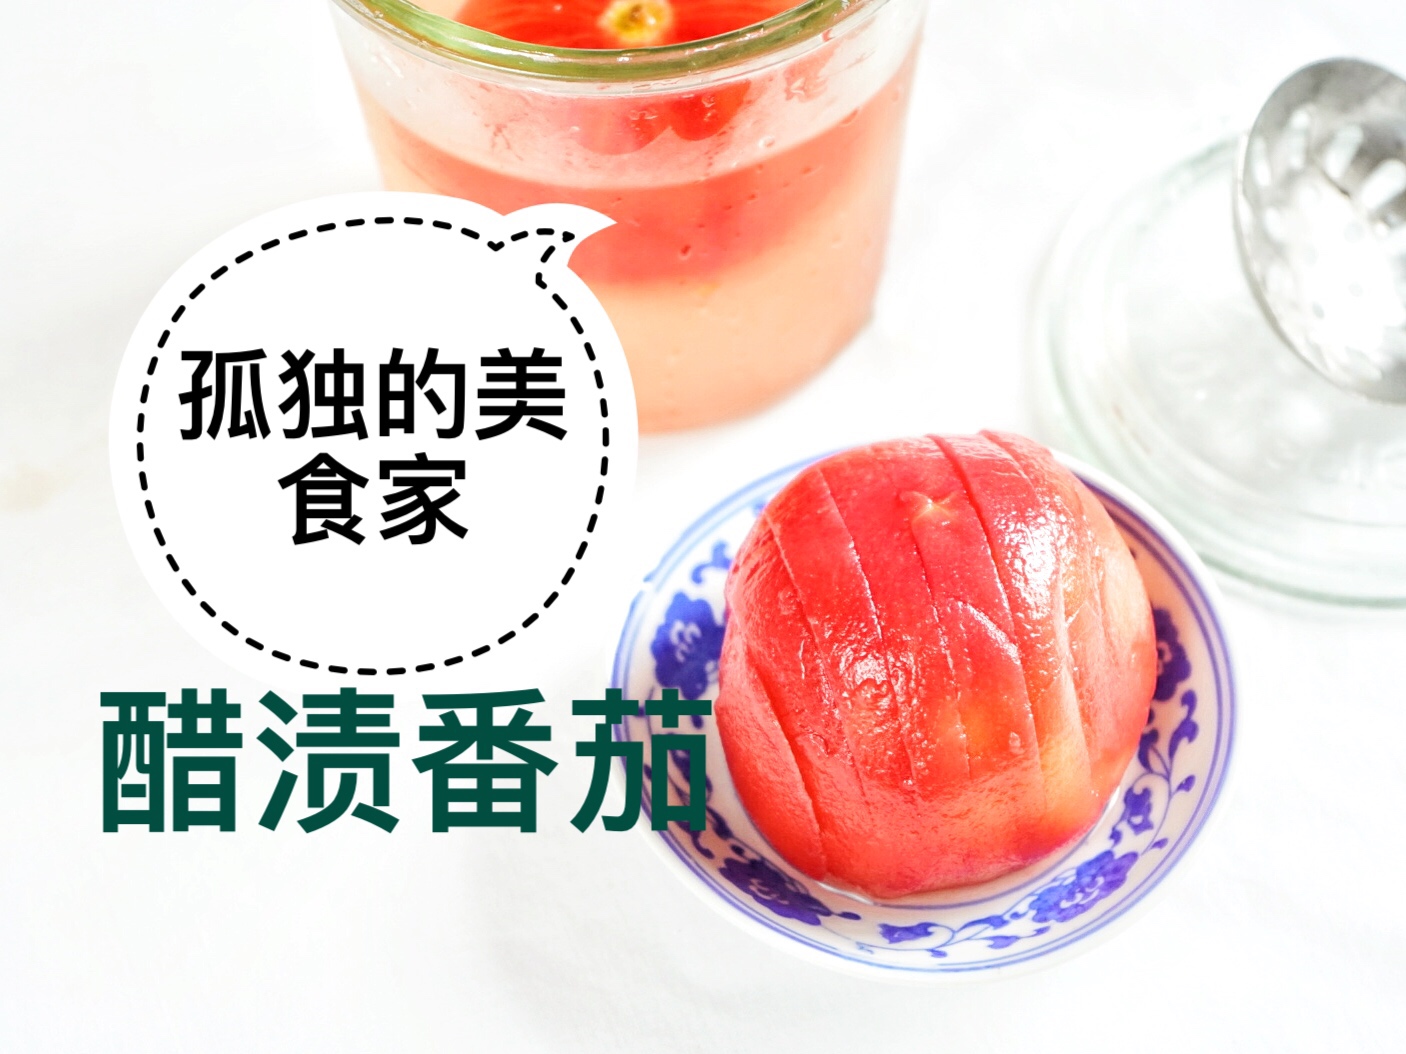 【孤独的美食家】醋渍番茄（栗原晴美版）夏日轻食